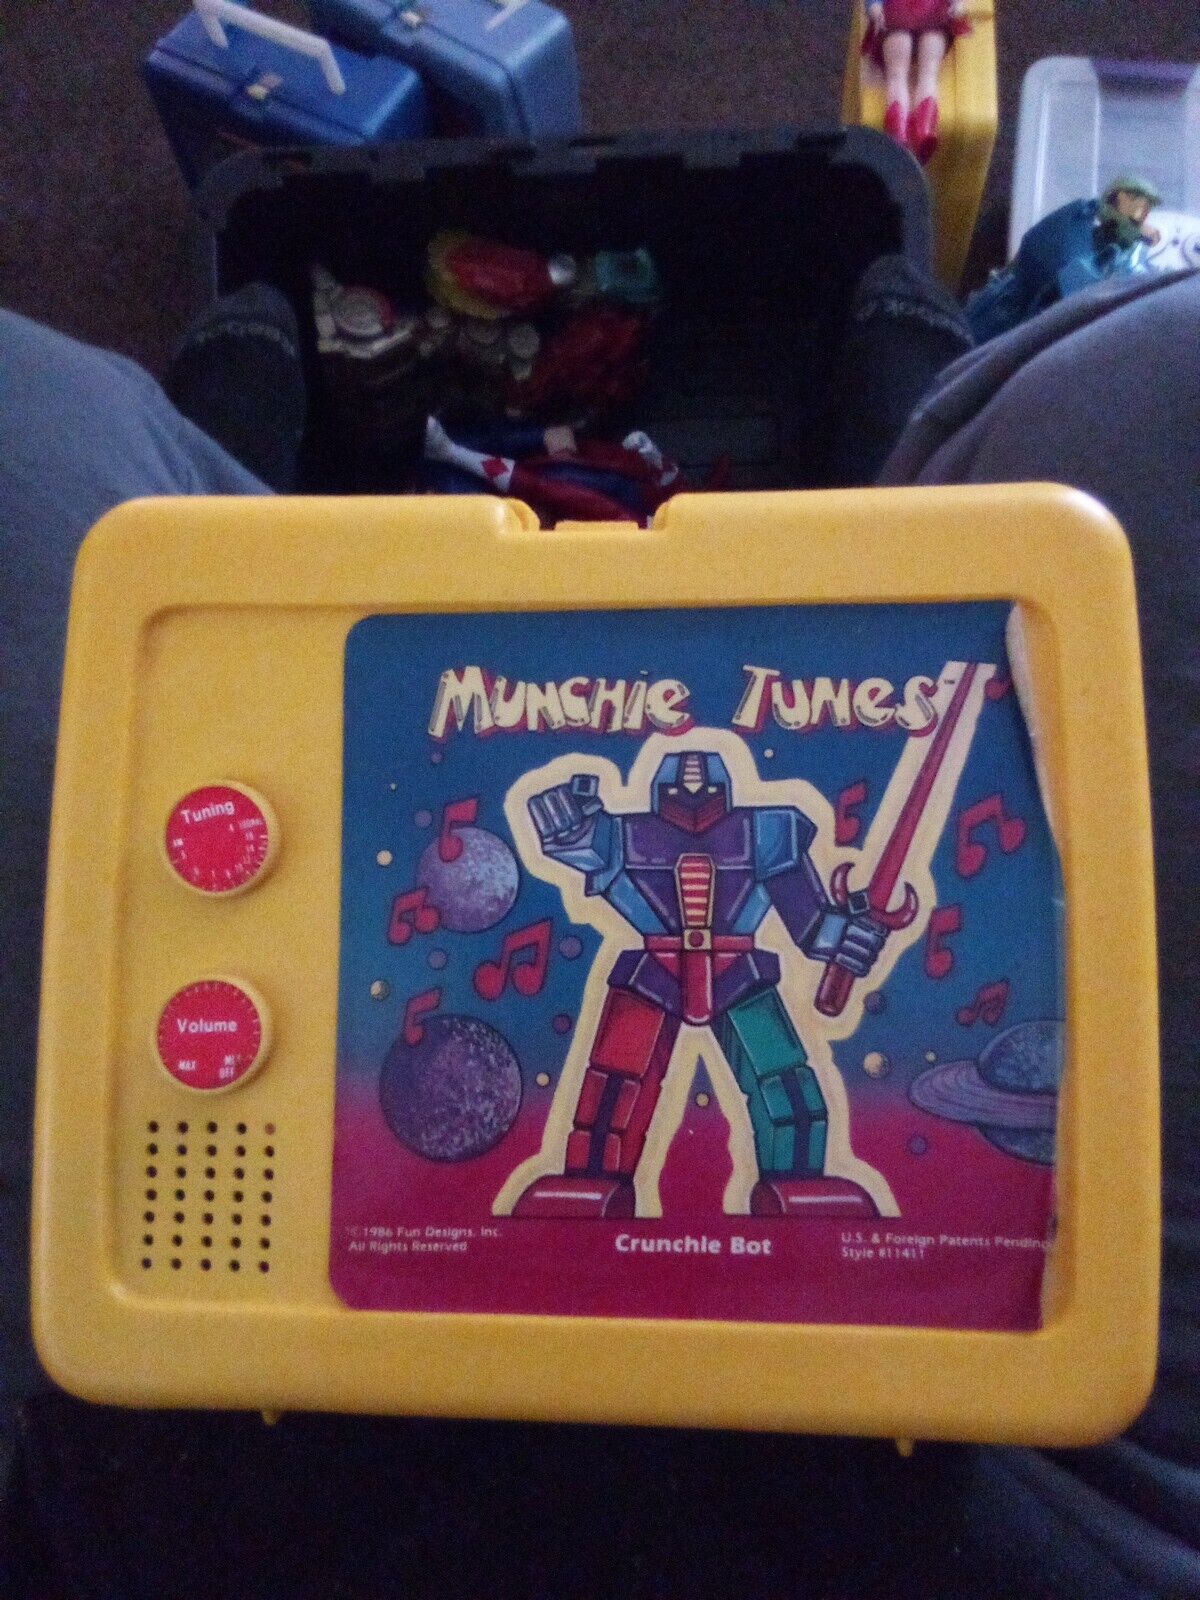 Lunchbox Vintage 1986 AM Radio Yellow Munchie Tunes Crunchie BoX